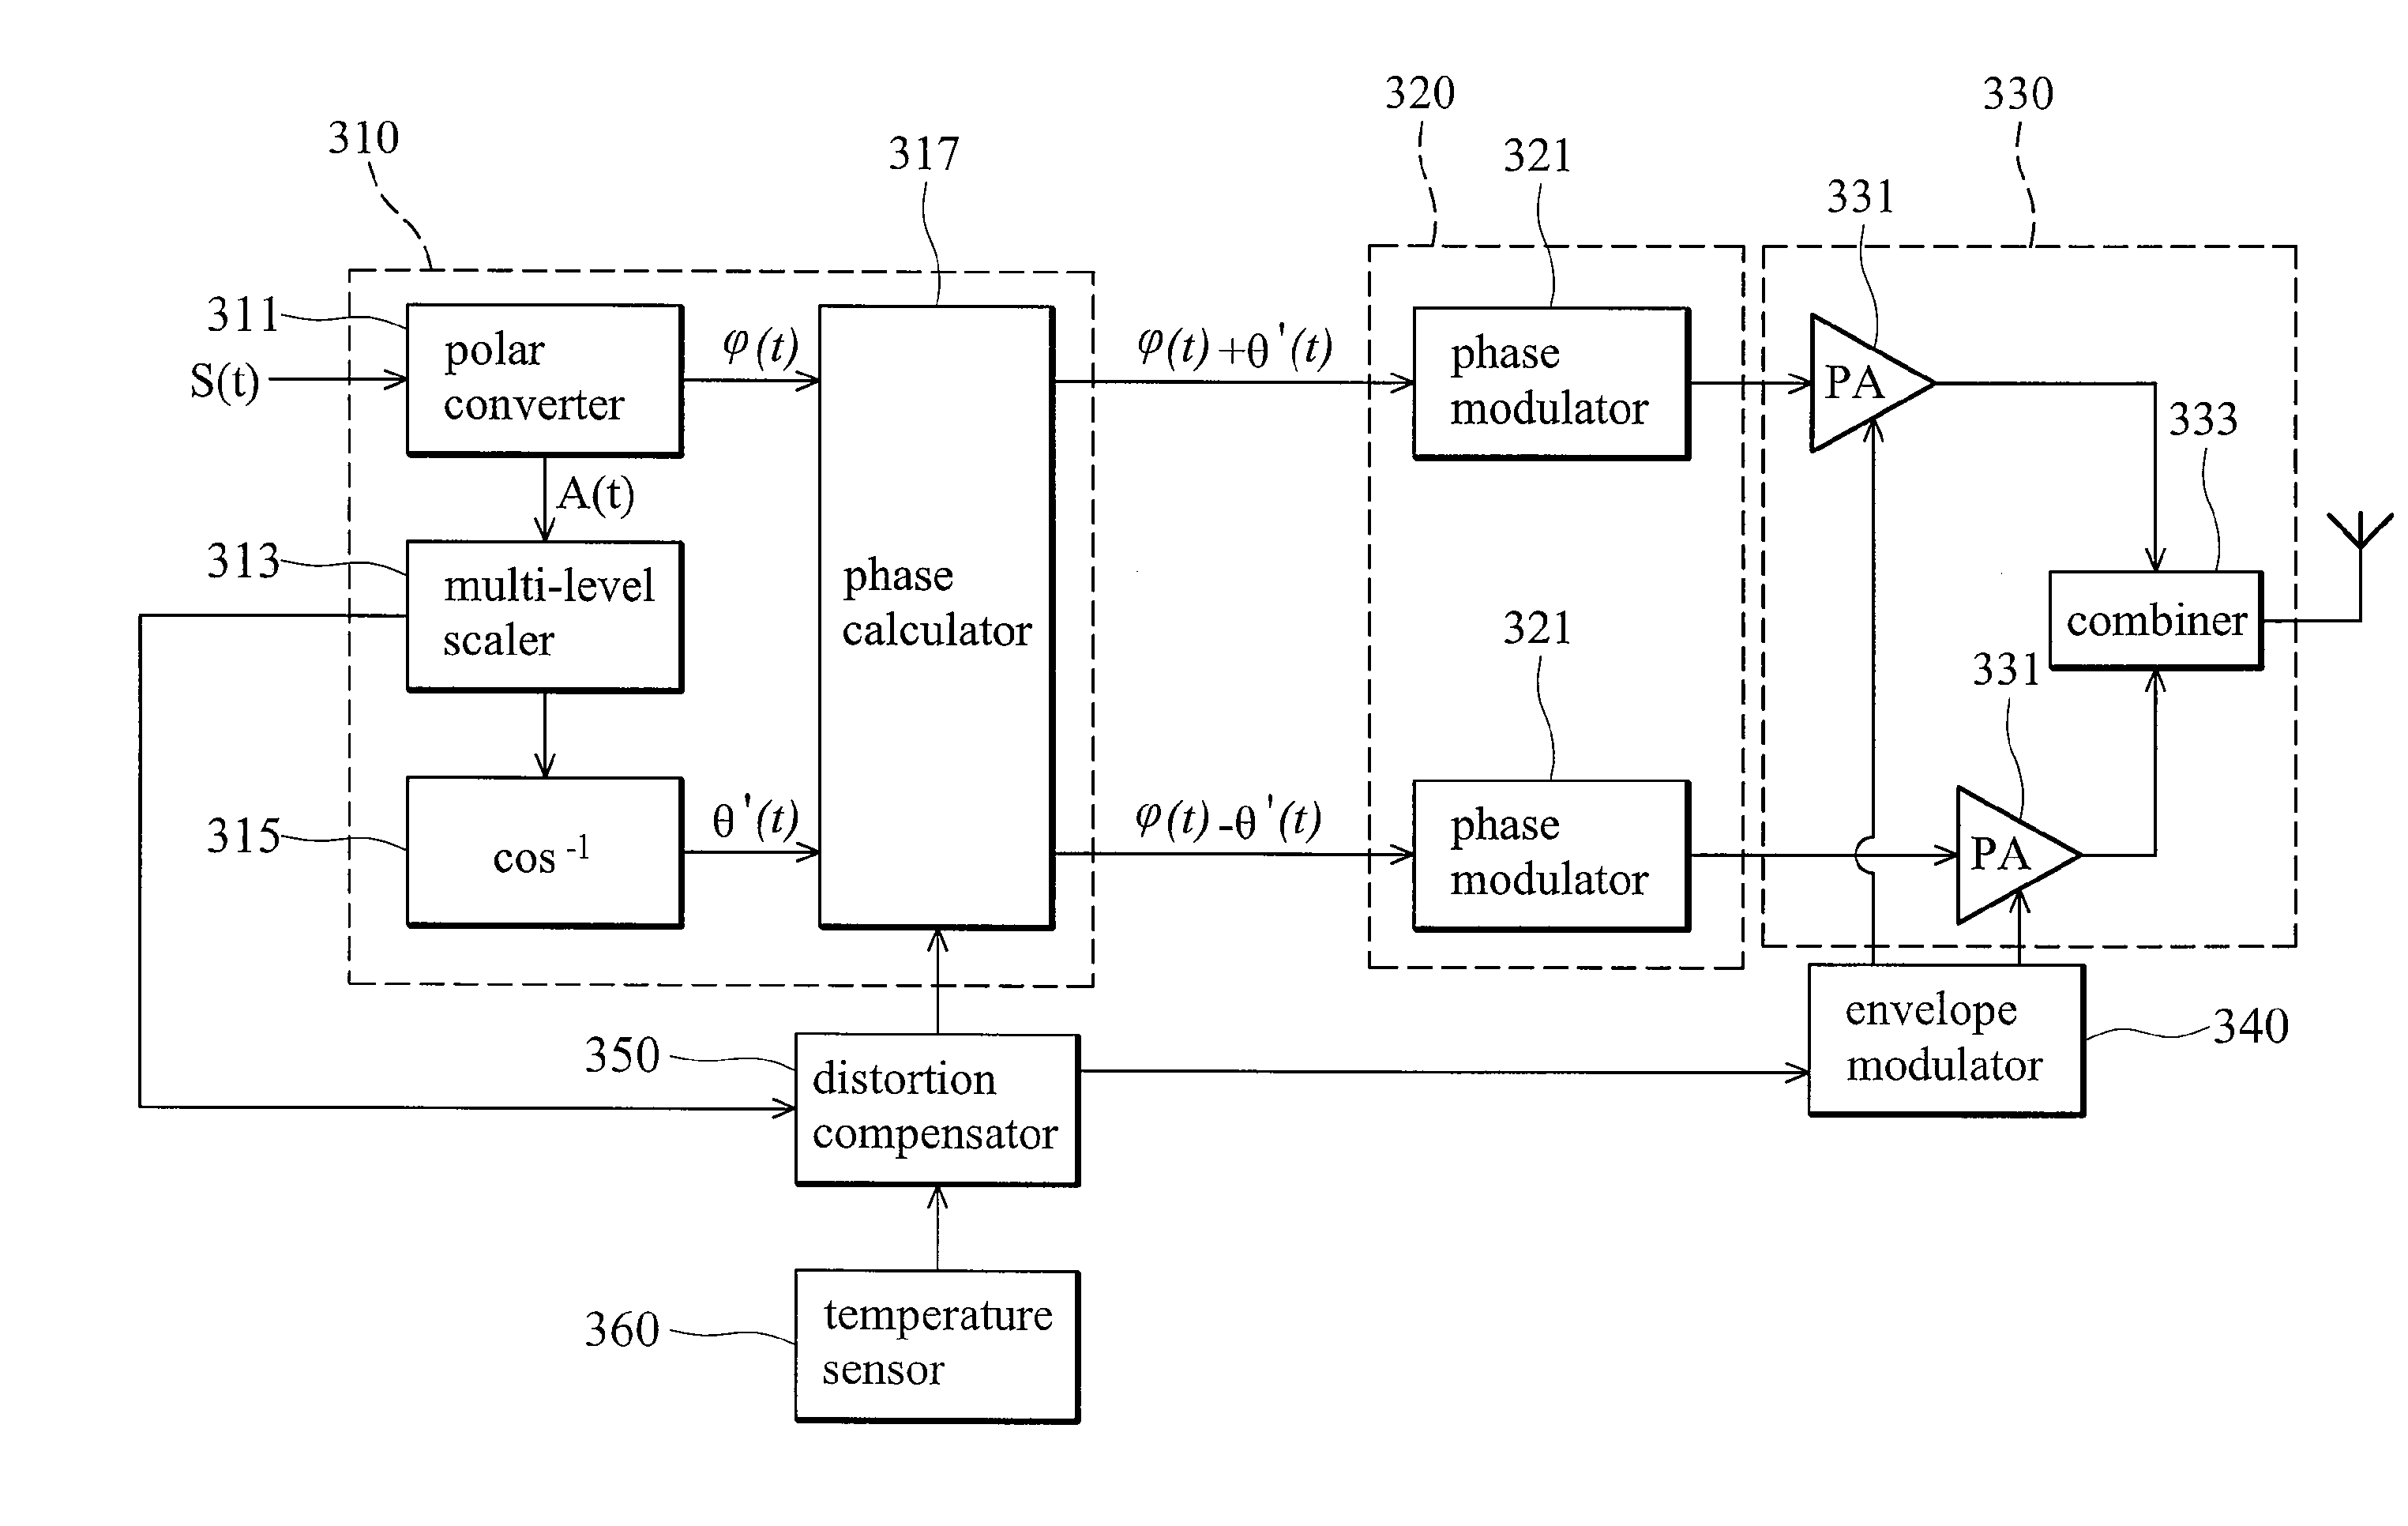 Multilevel linc transmitter